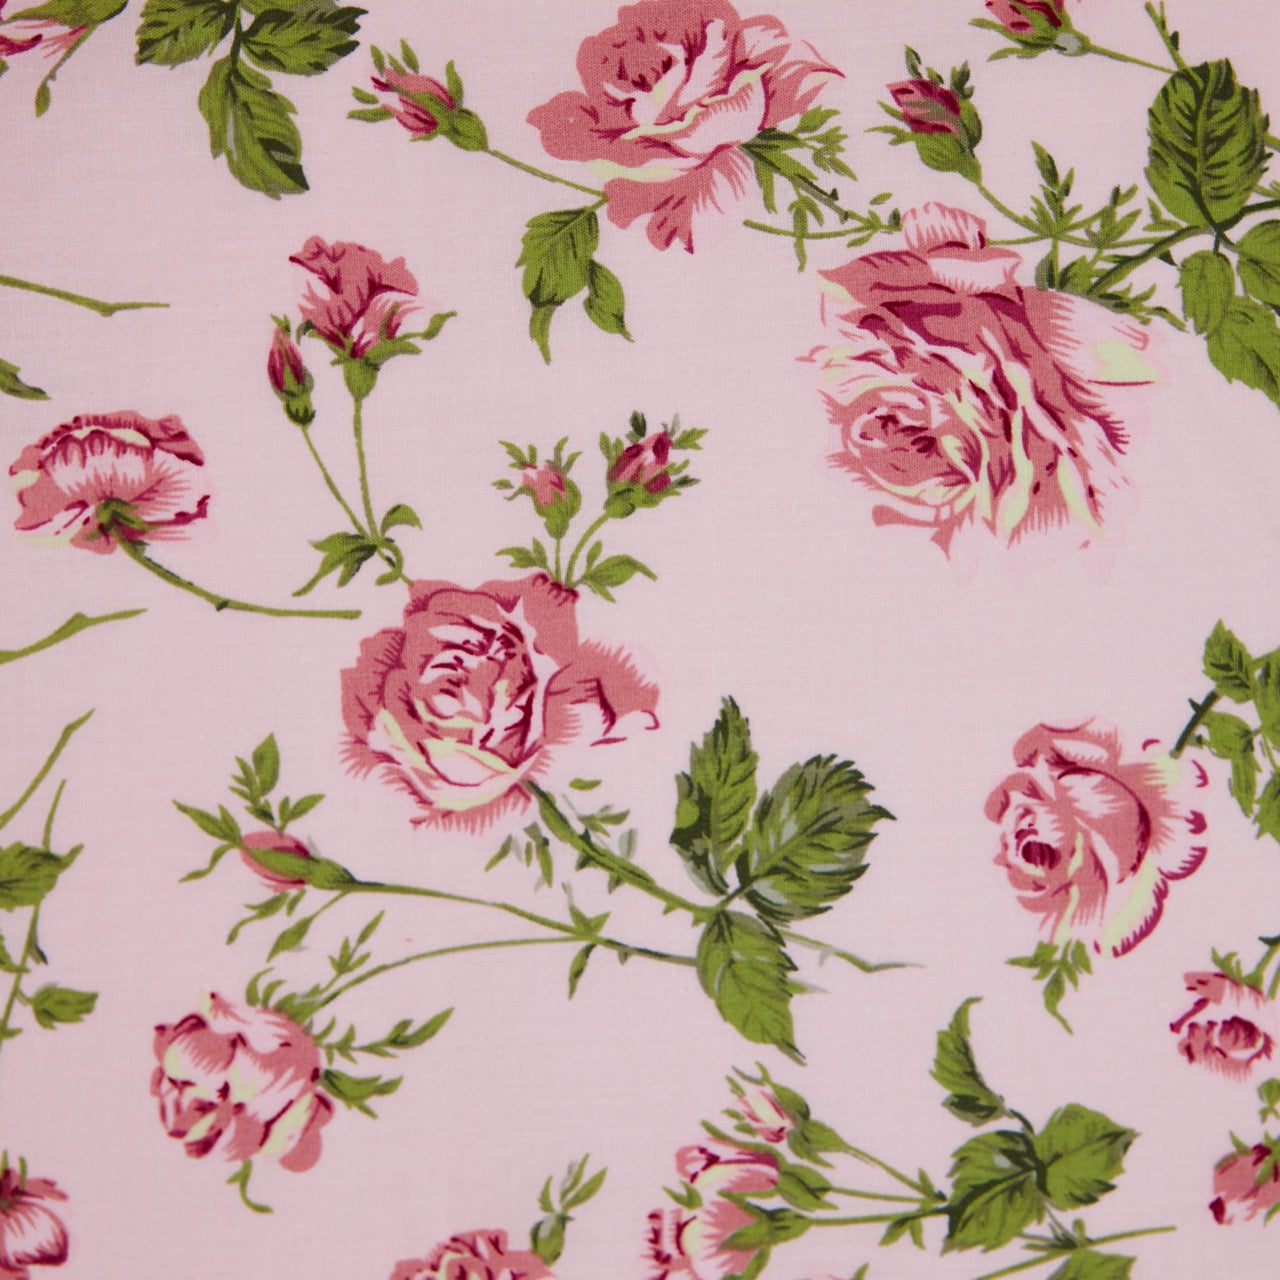 Cotton Floral - Vintage Rose #2 - Pink (detail)